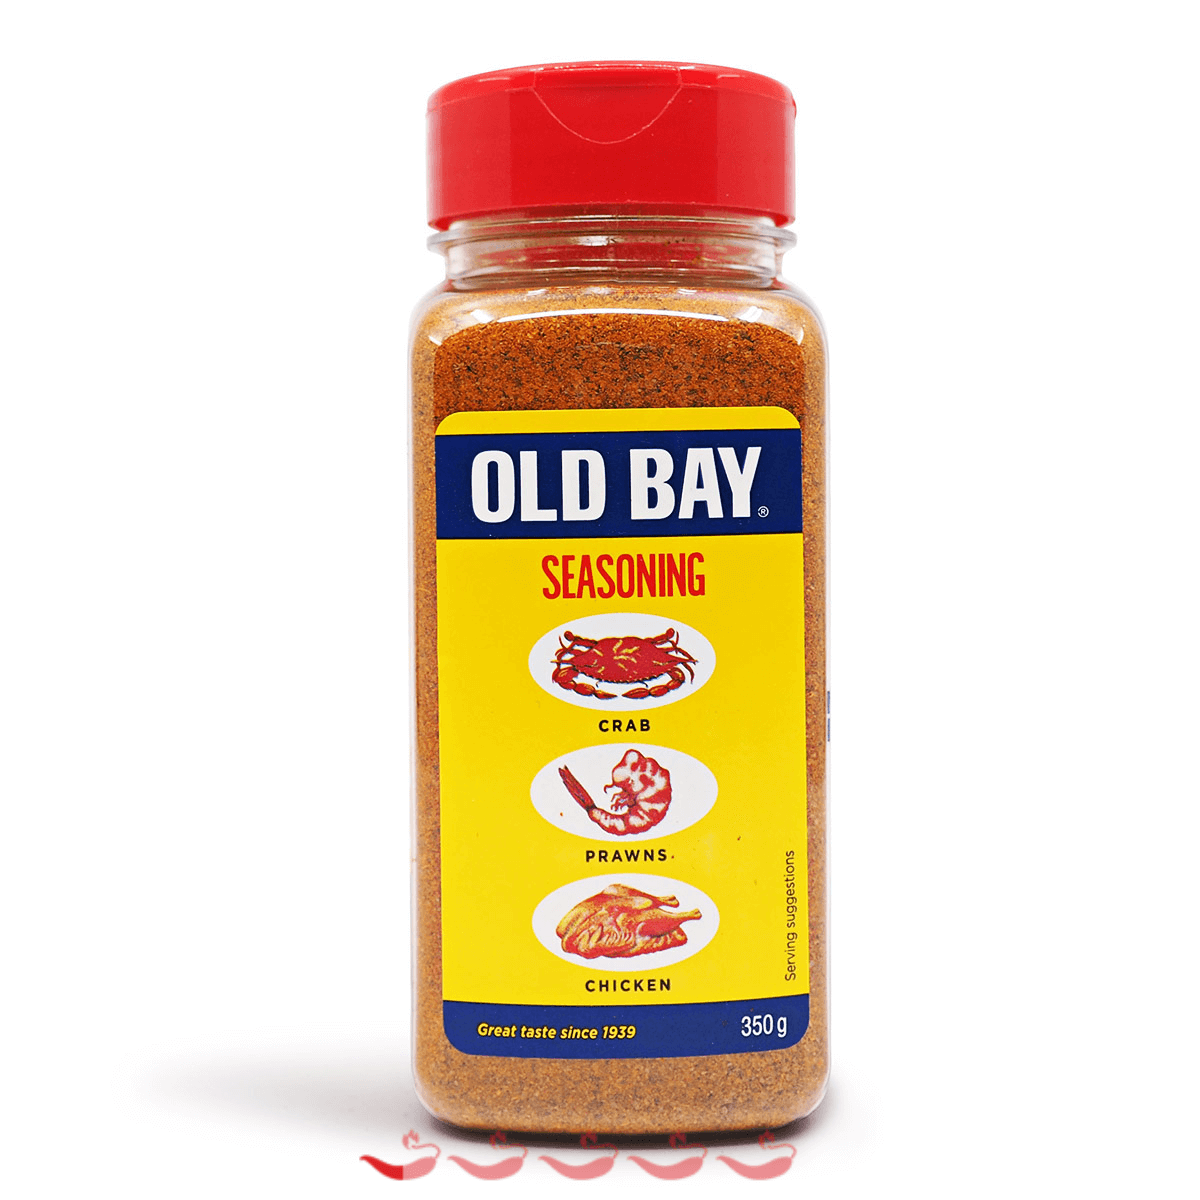 OLD BAY® Seasoning updated their - OLD BAY® Seasoning